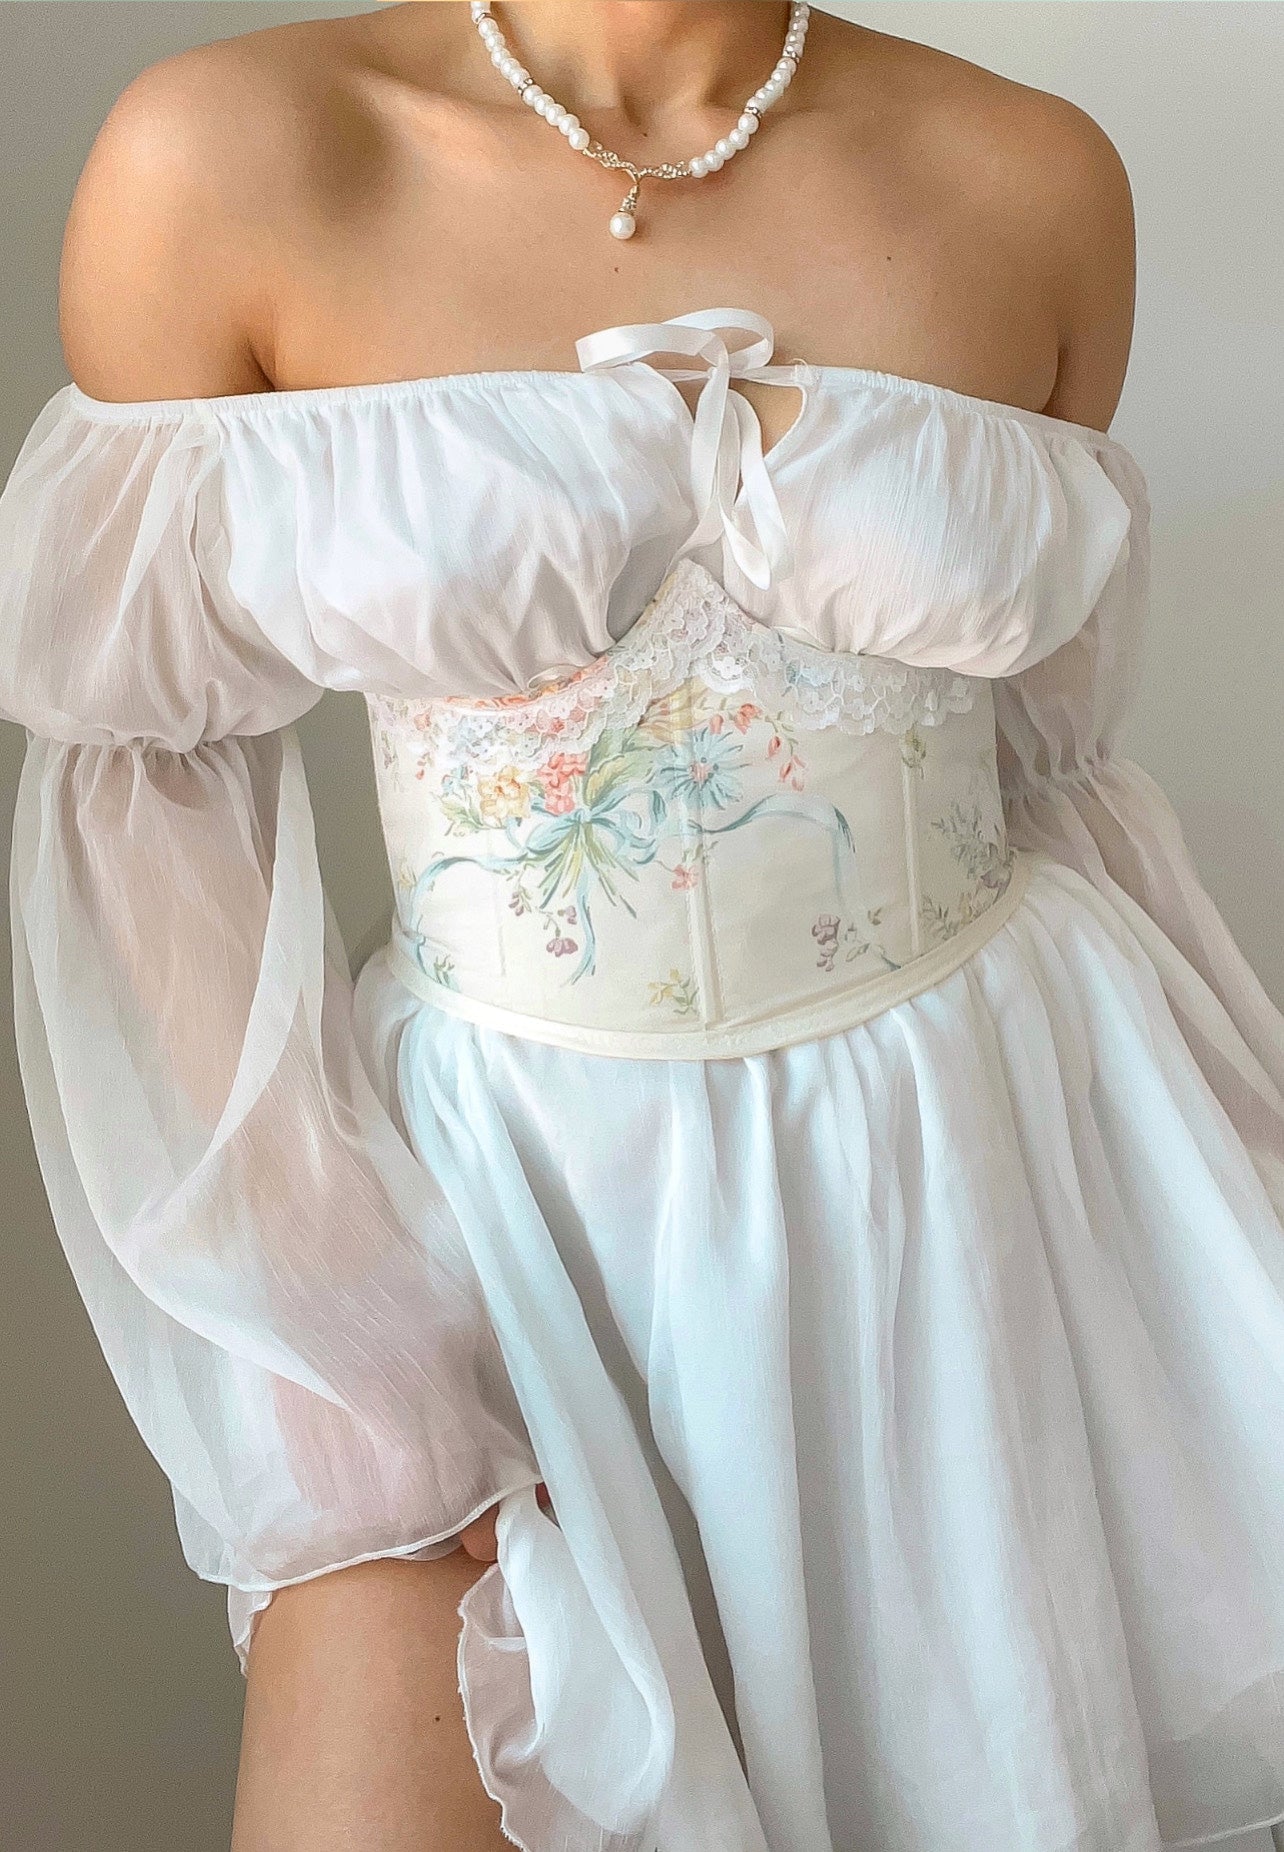 Prairie girl corset